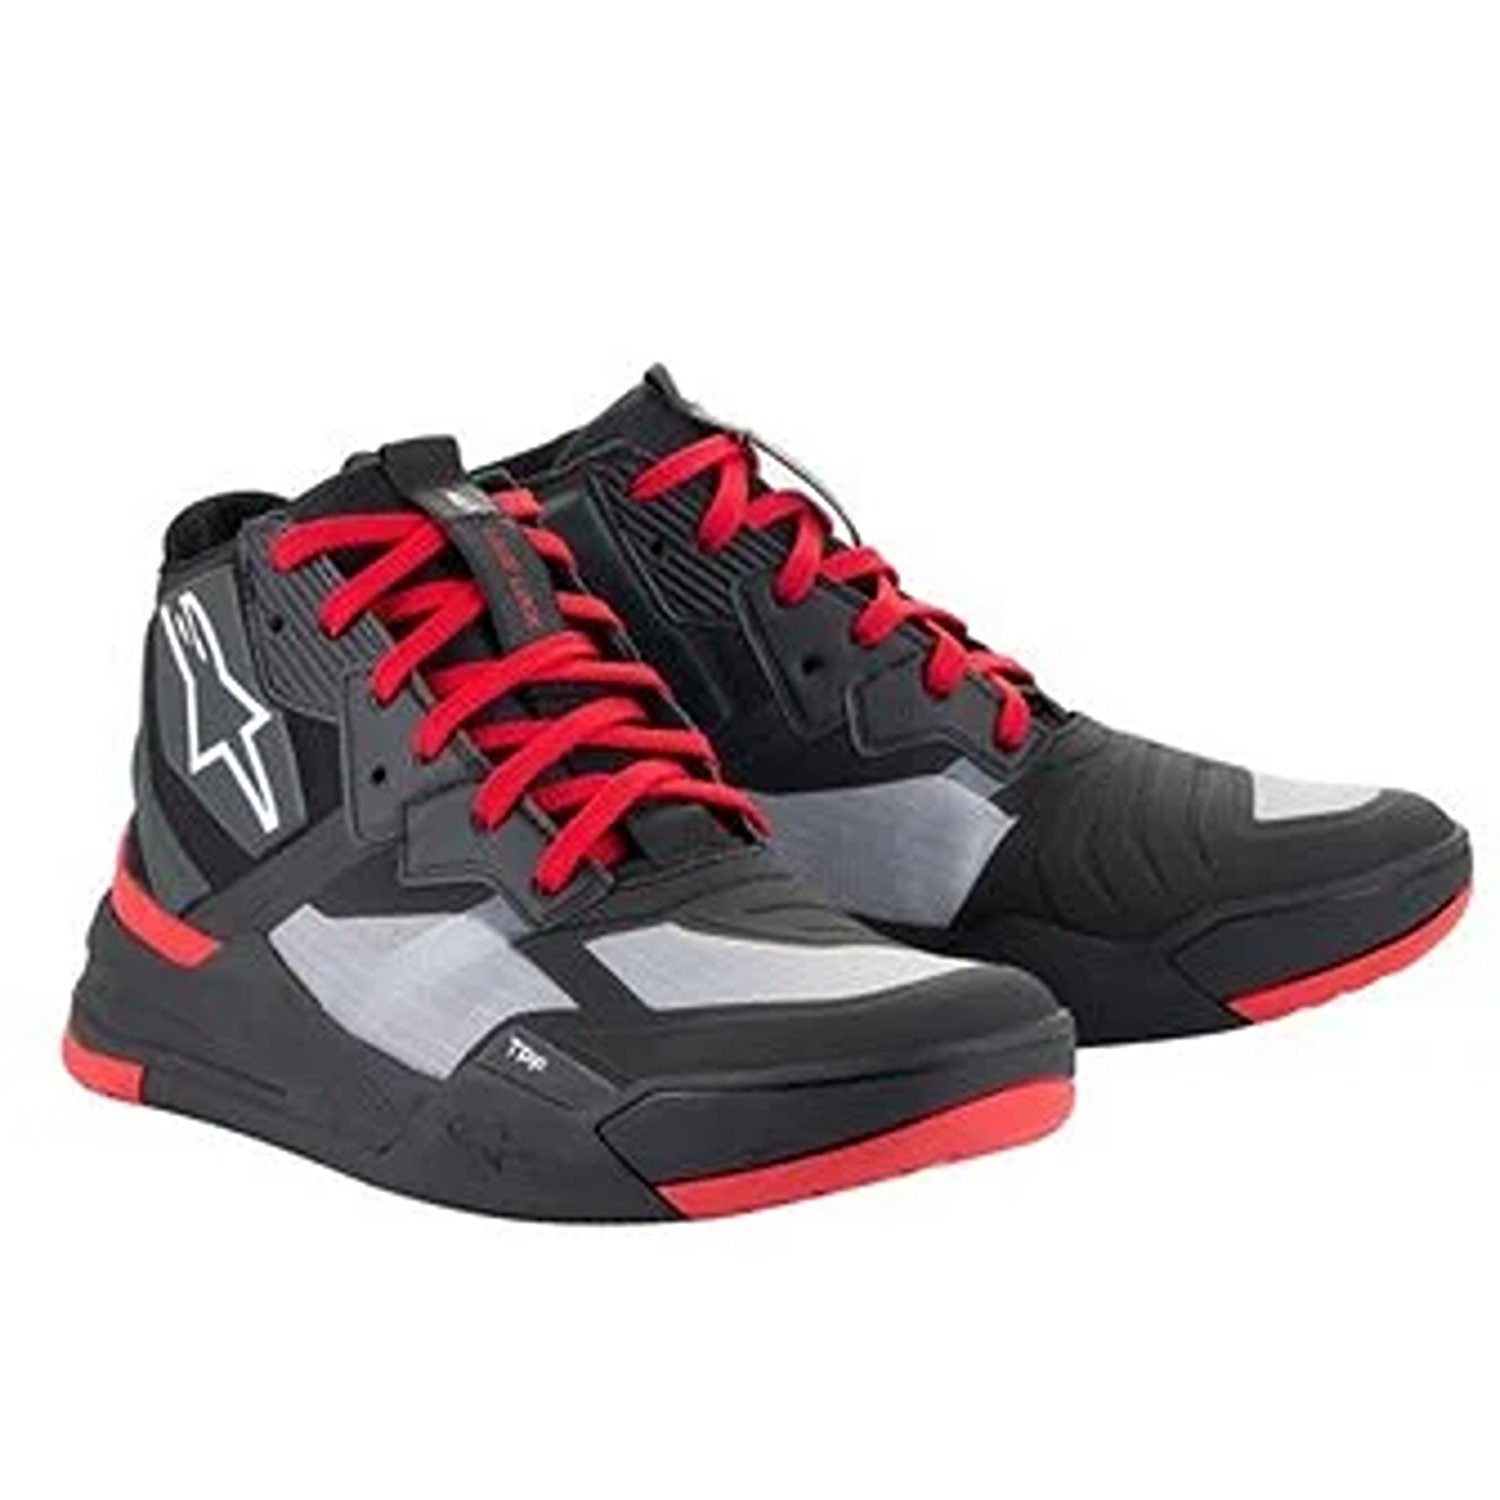 Image of Alpinestars Speedflight Shoes Black Bright Red White Größe US 105